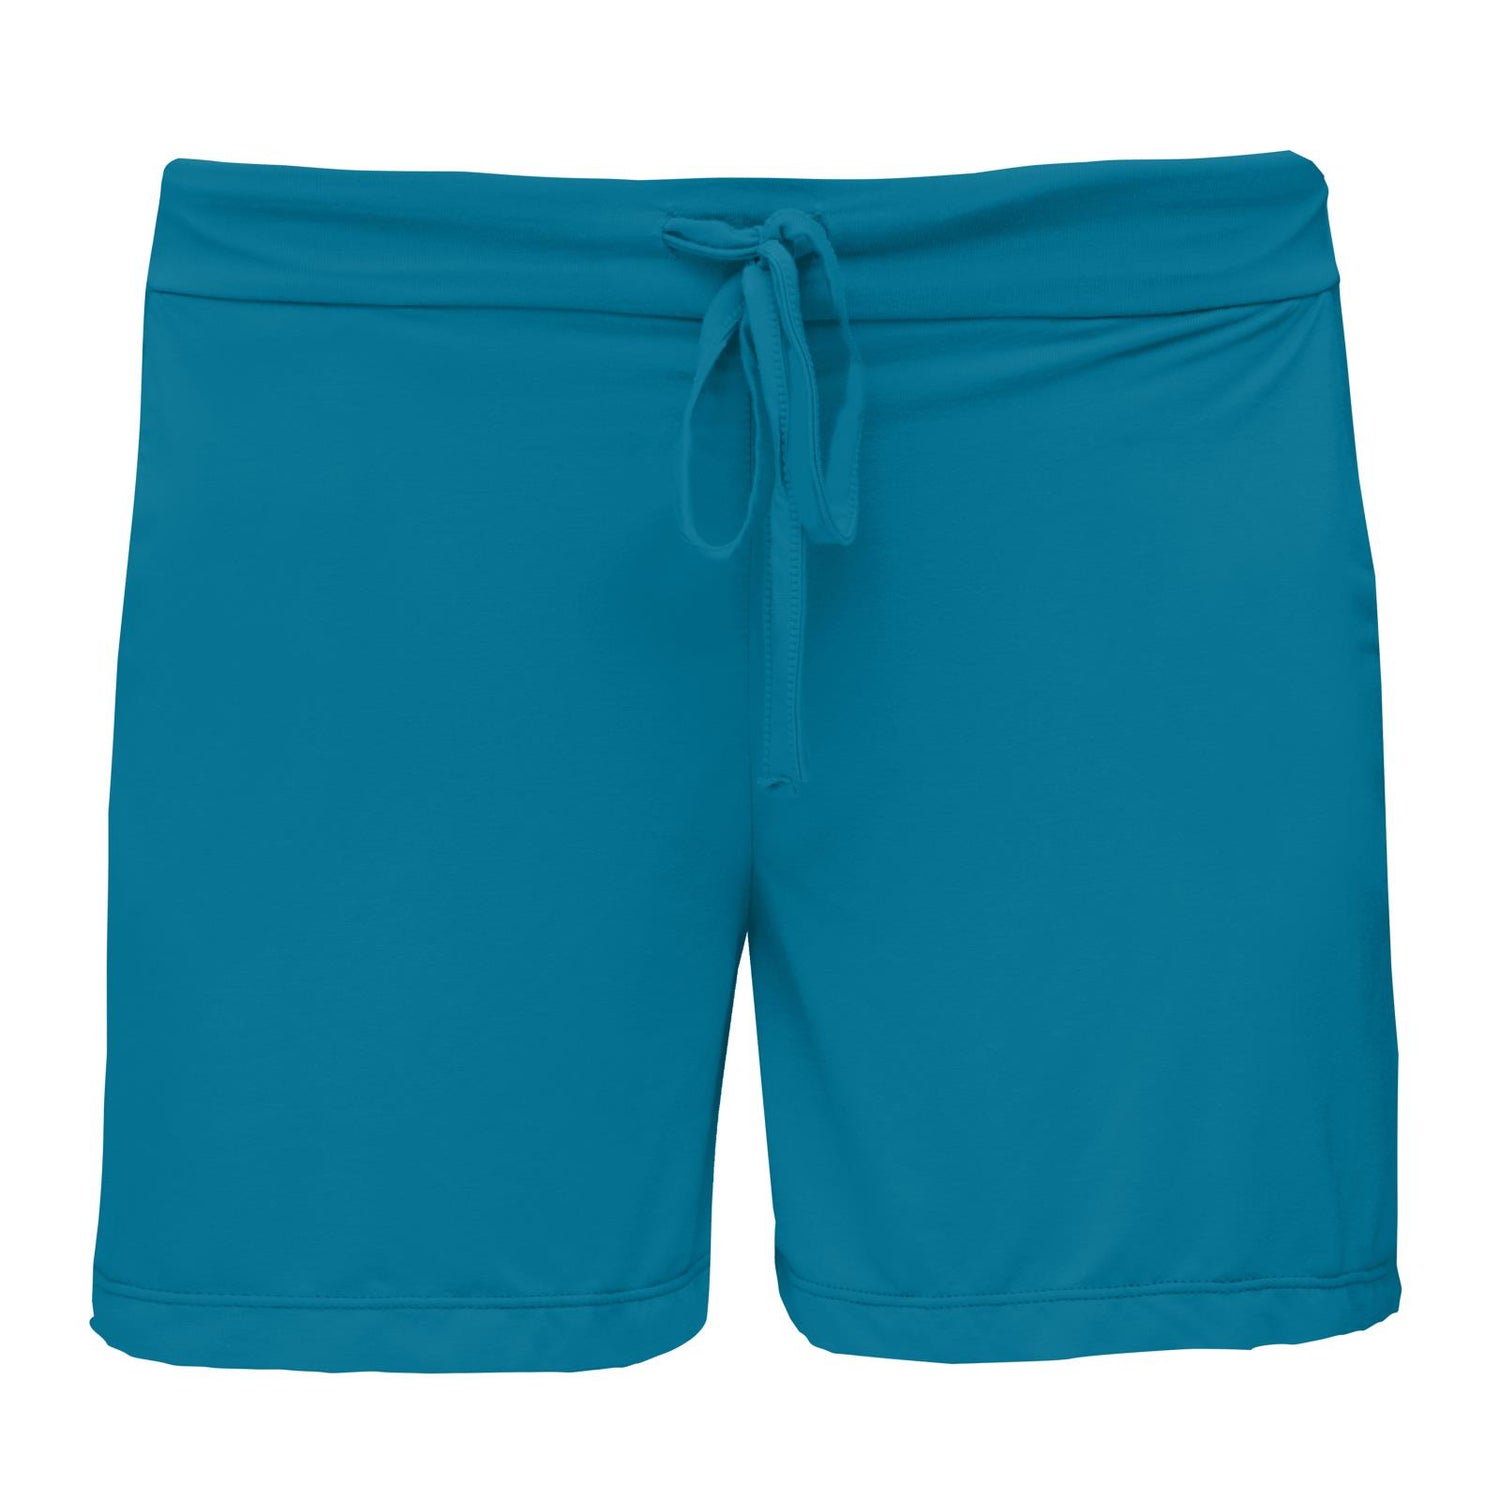 Women's Lounge Shorts in Cerulean Blue